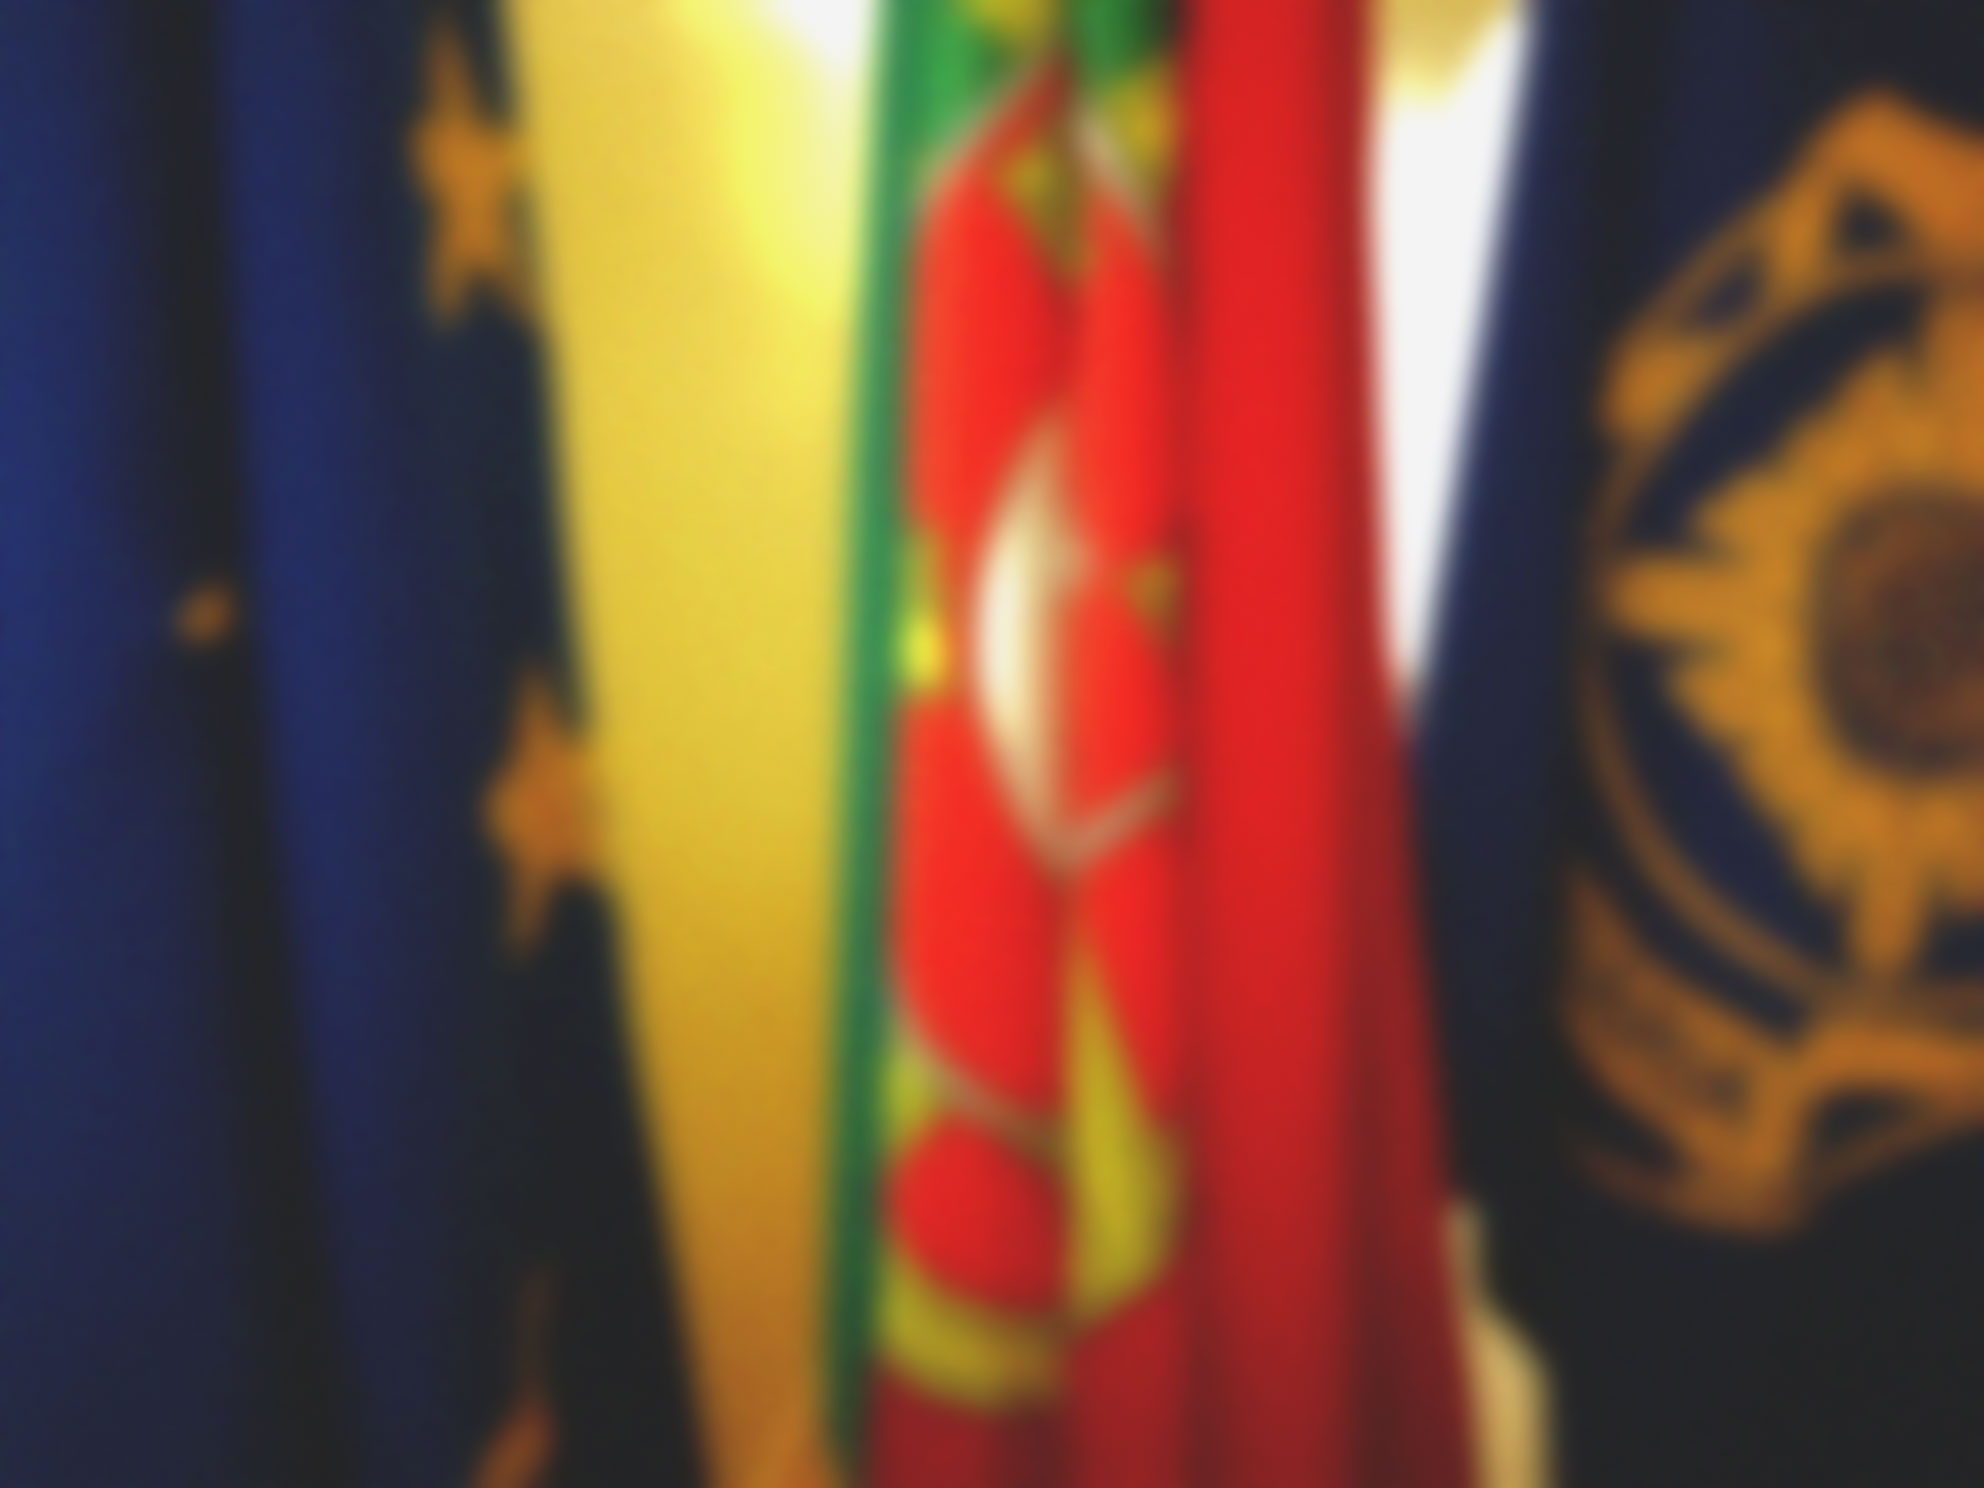 Imagem desfocada de três bandeiras: a da União Europeia, de Portugal e da Polícia Judiciária